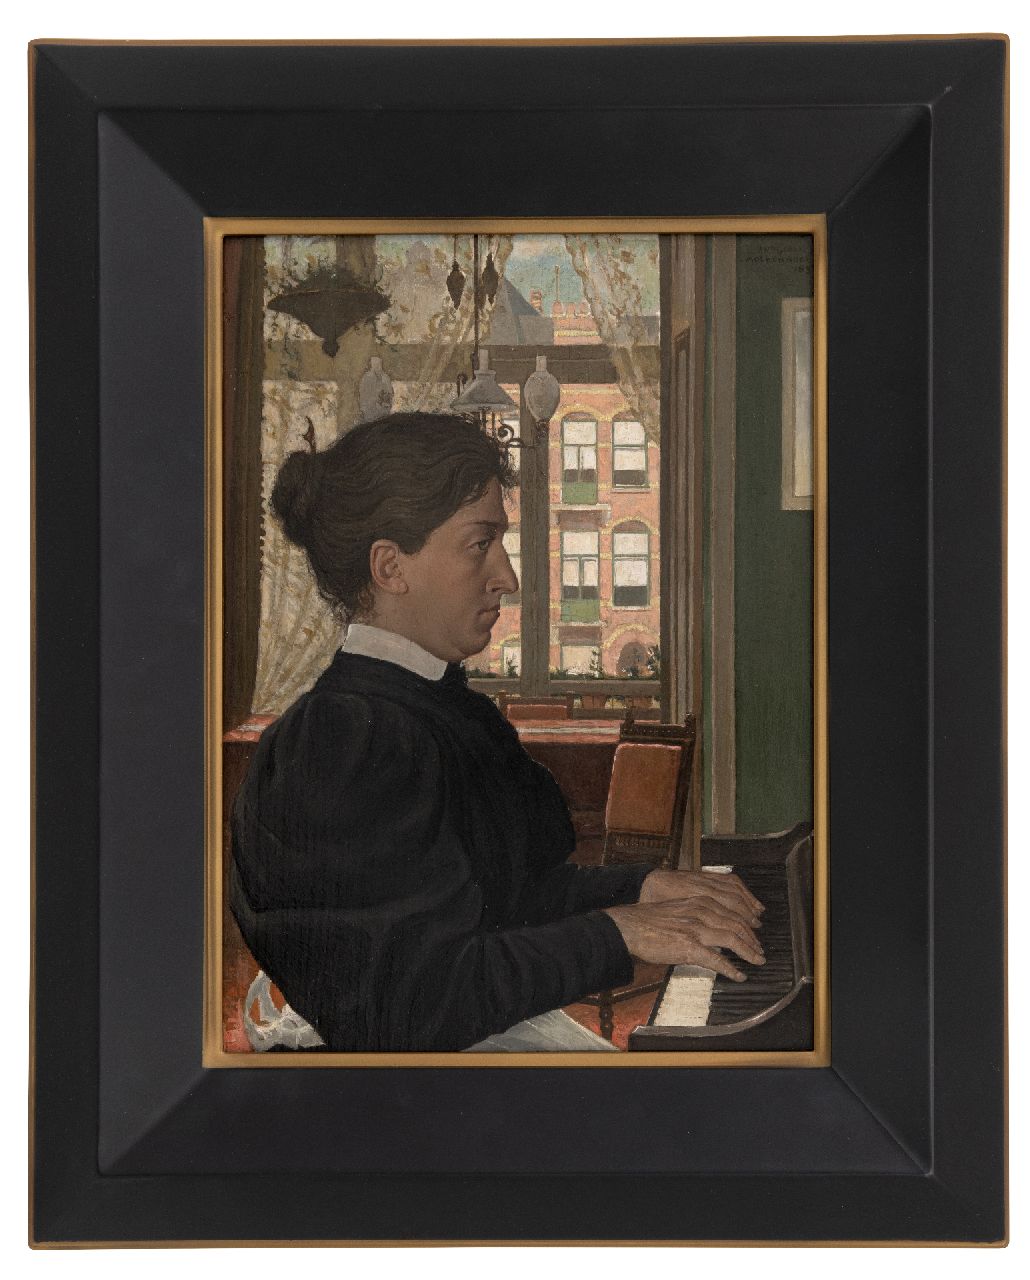 Molkenboer A.H.J.  | Antonius Henricus Johannes 'Anton' Molkenboer | Schilderijen te koop aangeboden | Pianospelende vrouw, olieverf op paneel 36,3 x 26,8 cm, gesigneerd rechtsboven en gedateerd 1897